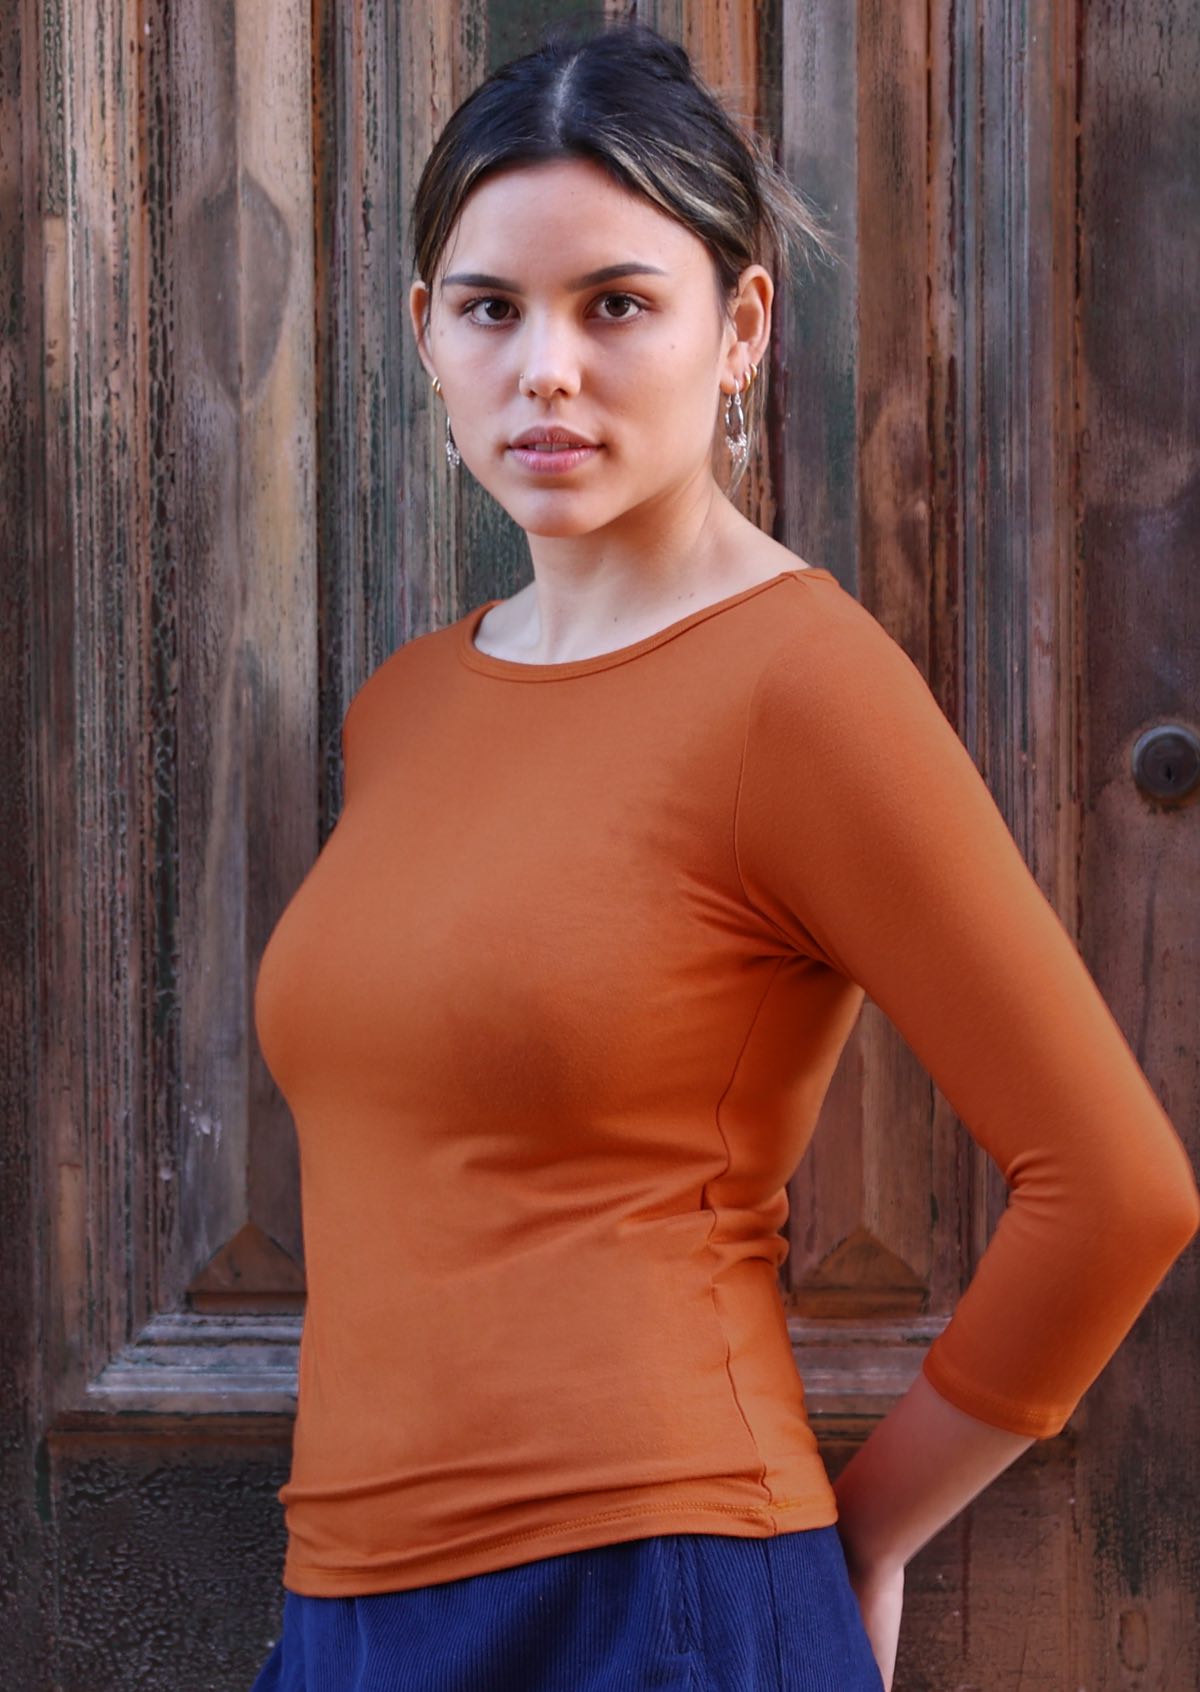 Women wears bright orange 3/4 sleeve top